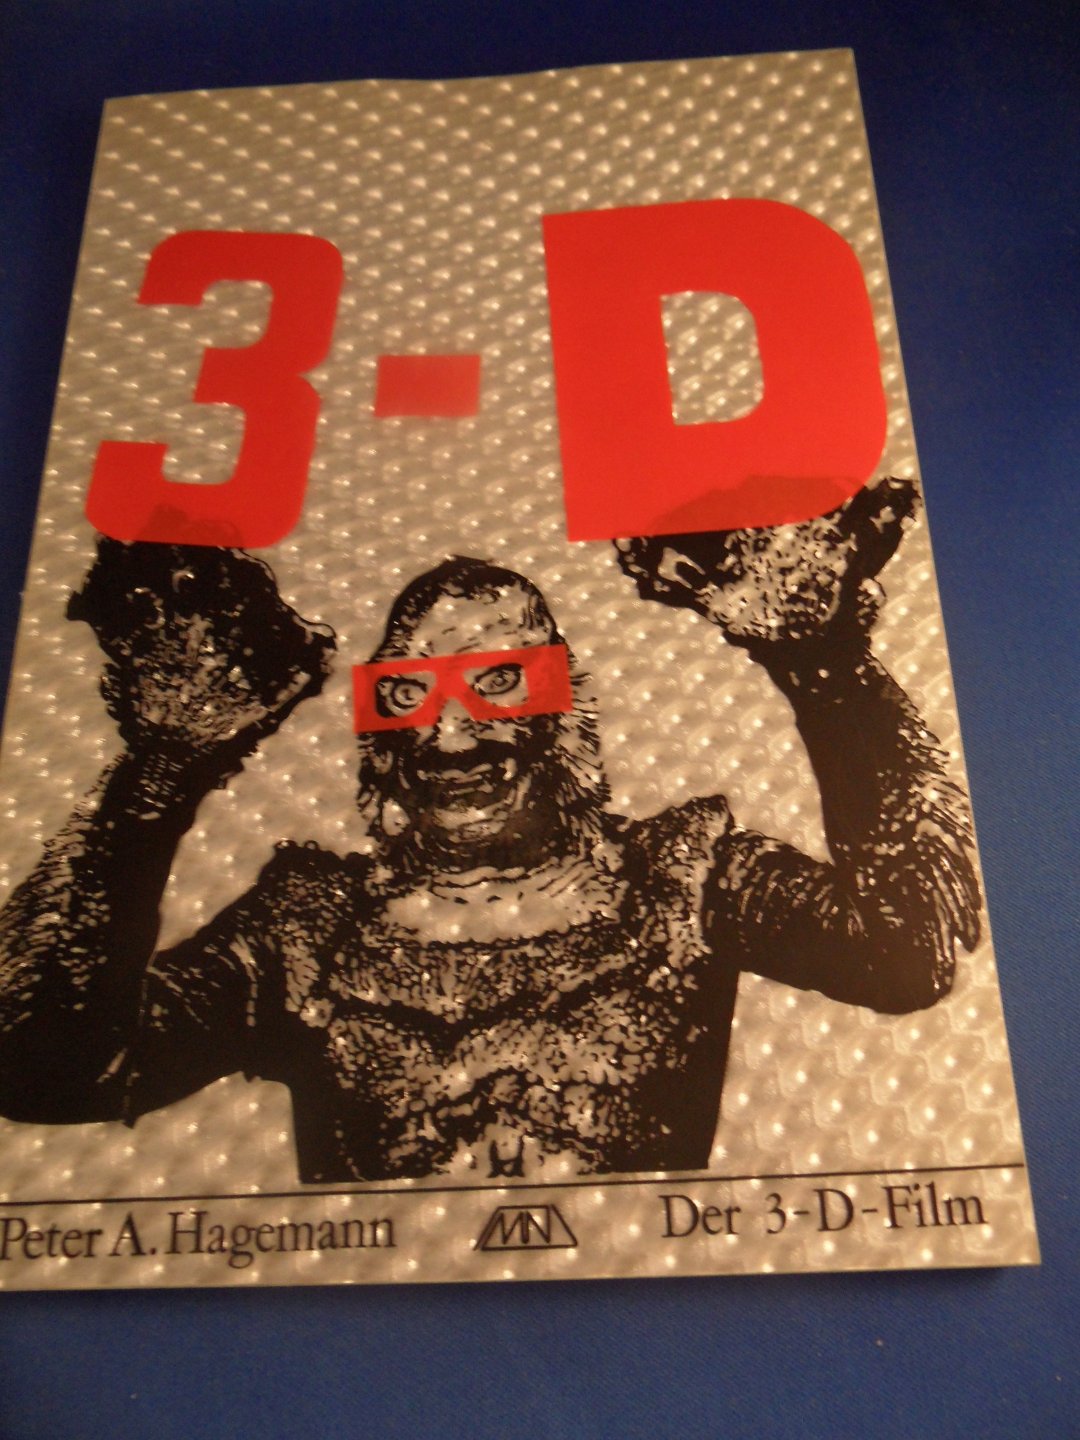 Hagemann, Peter - Der 3-D Film